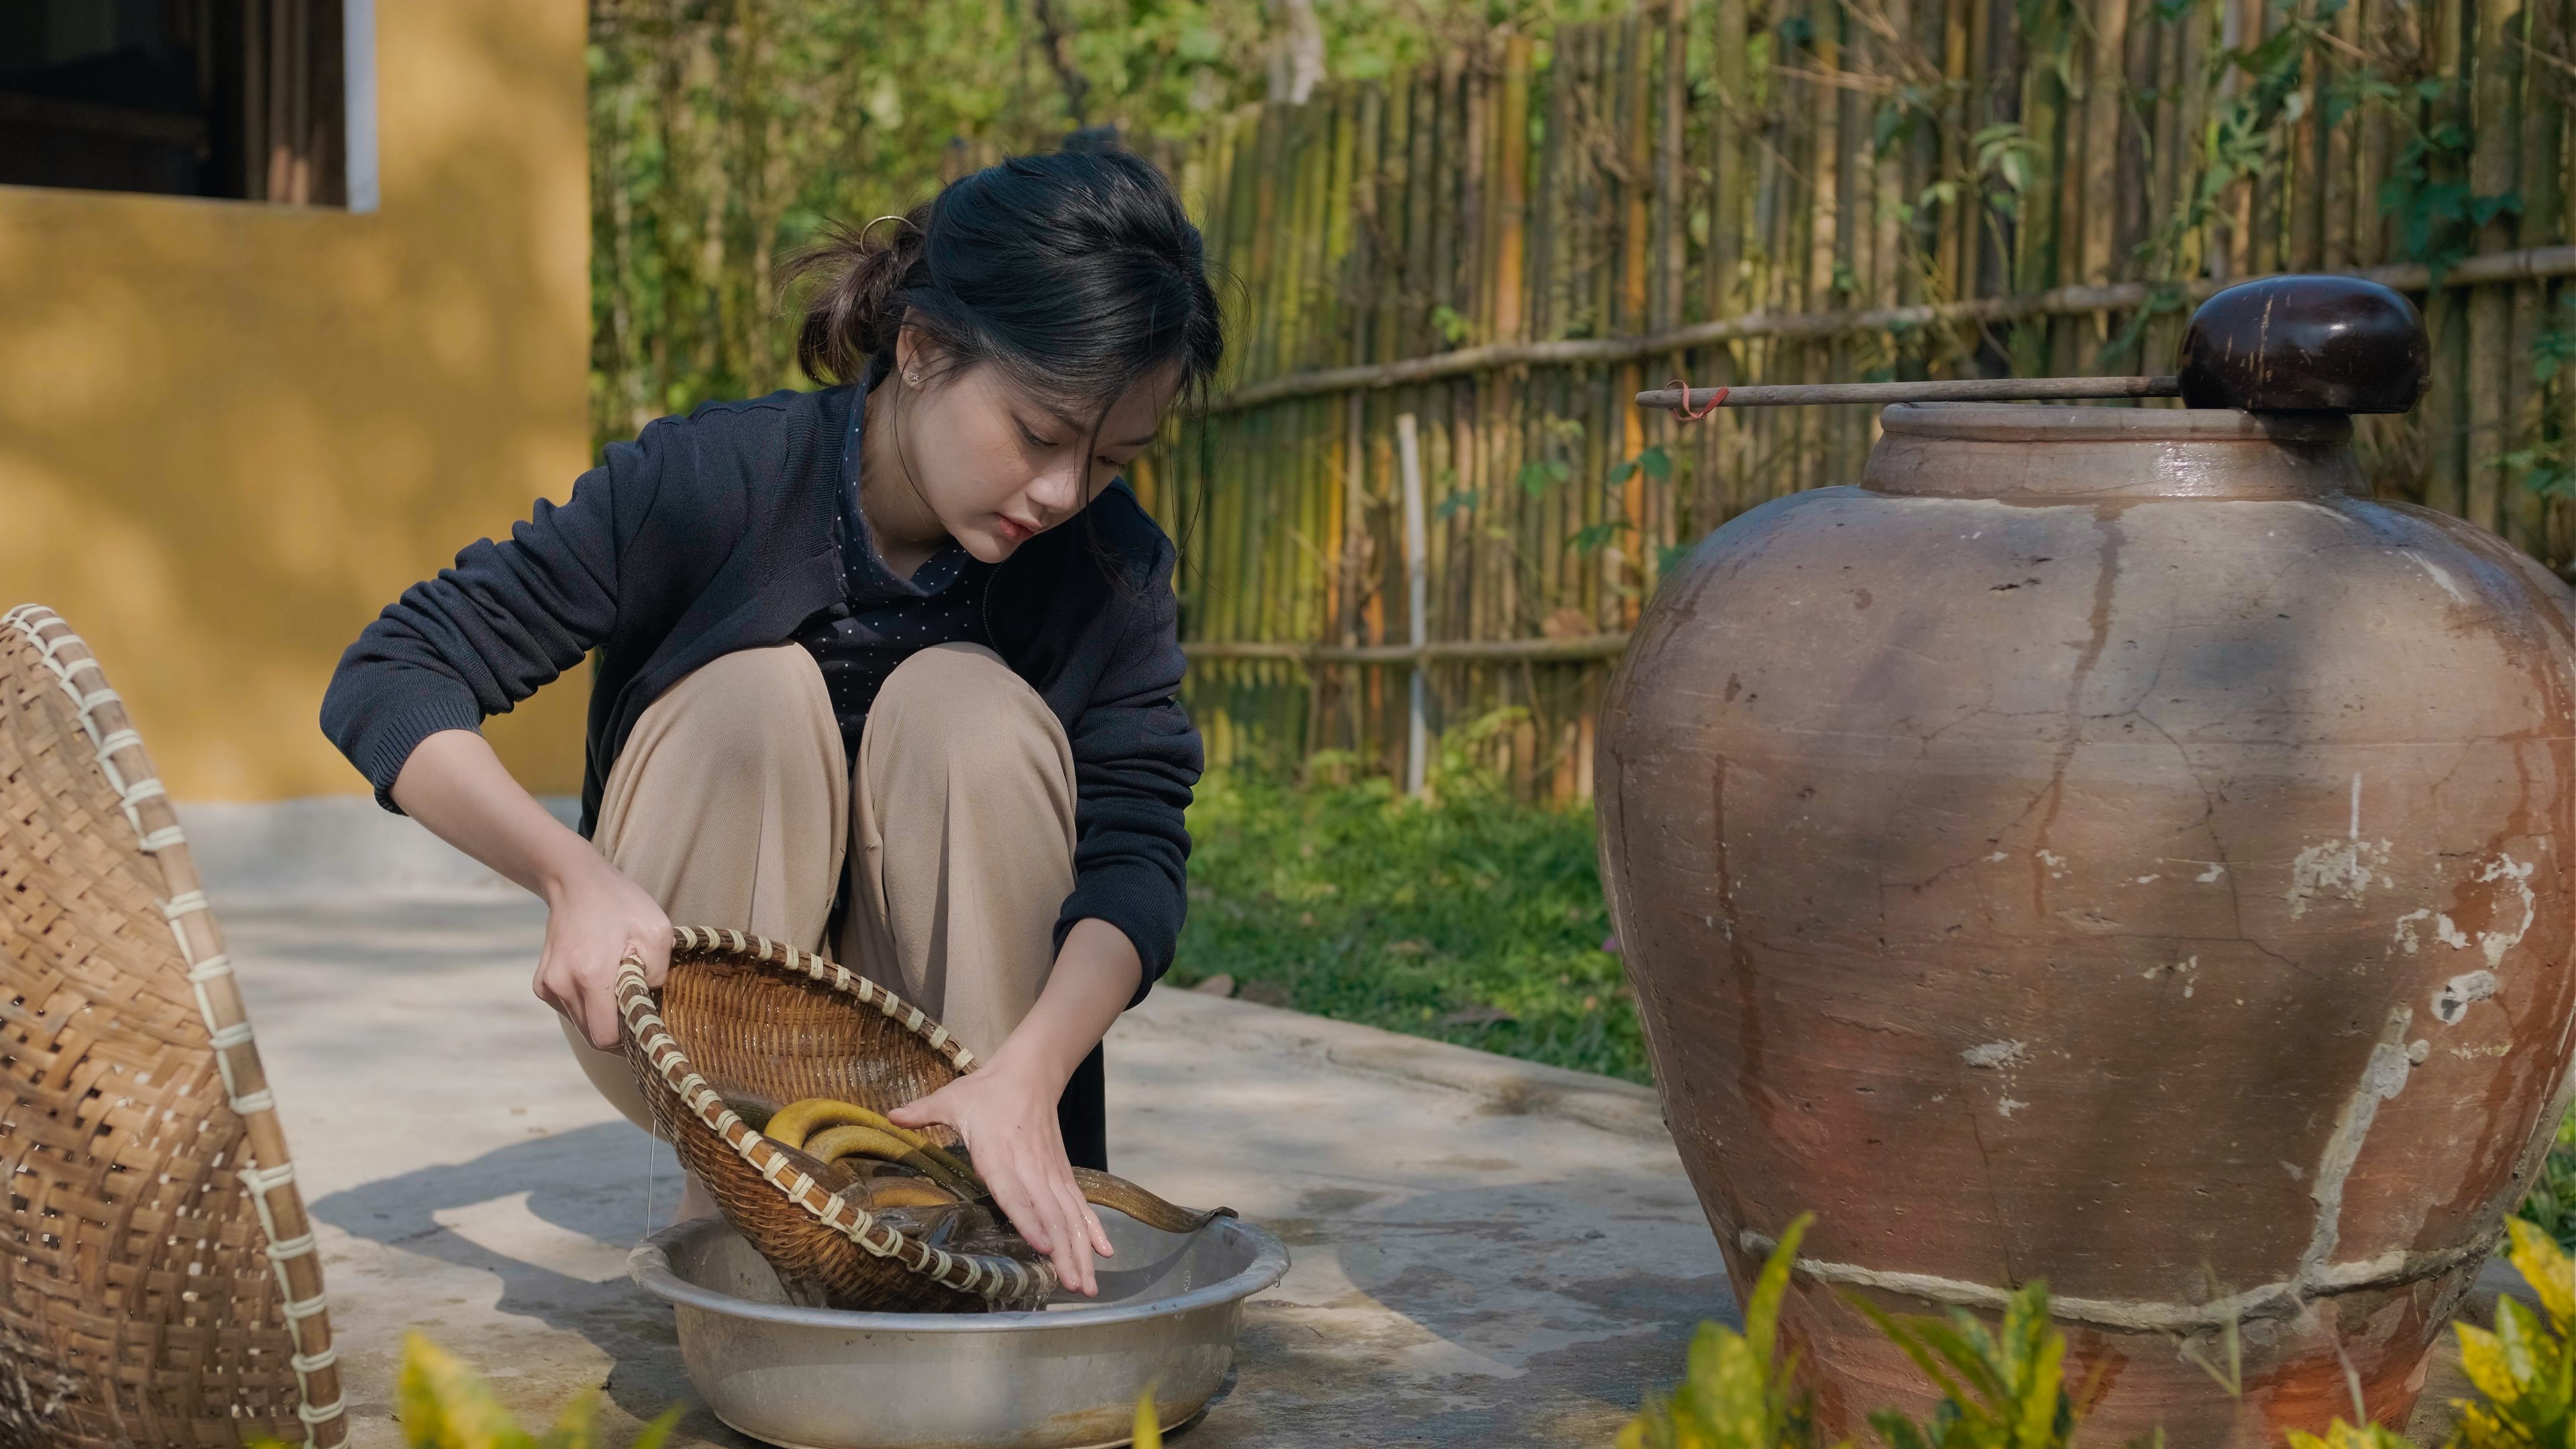 Cô nàng chuẩn bị nguyên liệu để làm món súp lươn nổi tiếng trứ danh Nghệ An. Ảnh; Nhân vật cung cấp